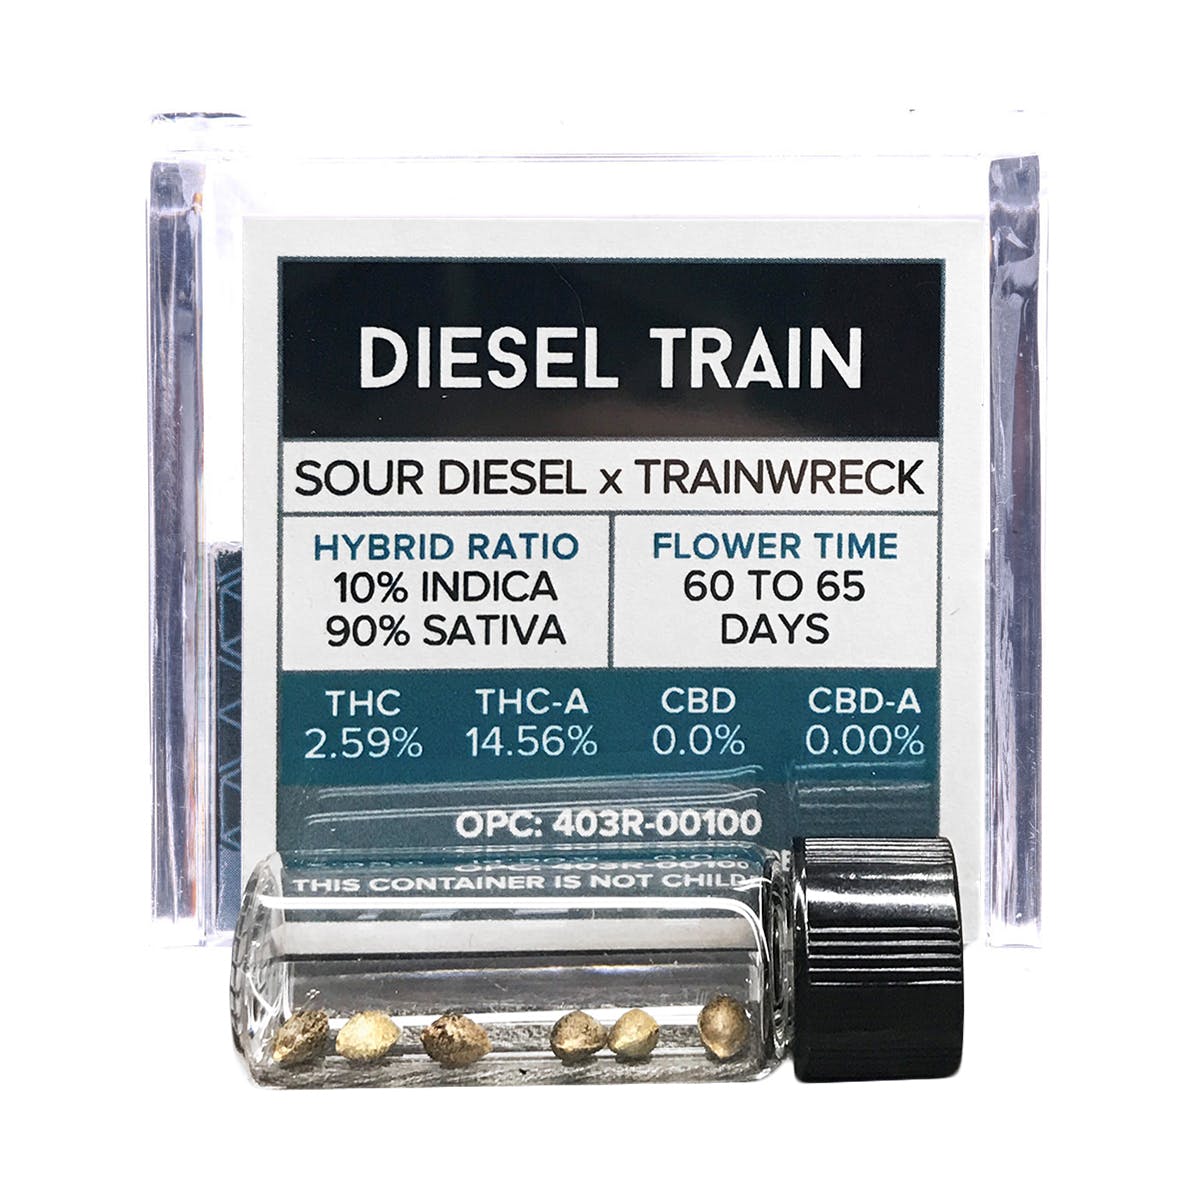 Diesel Train